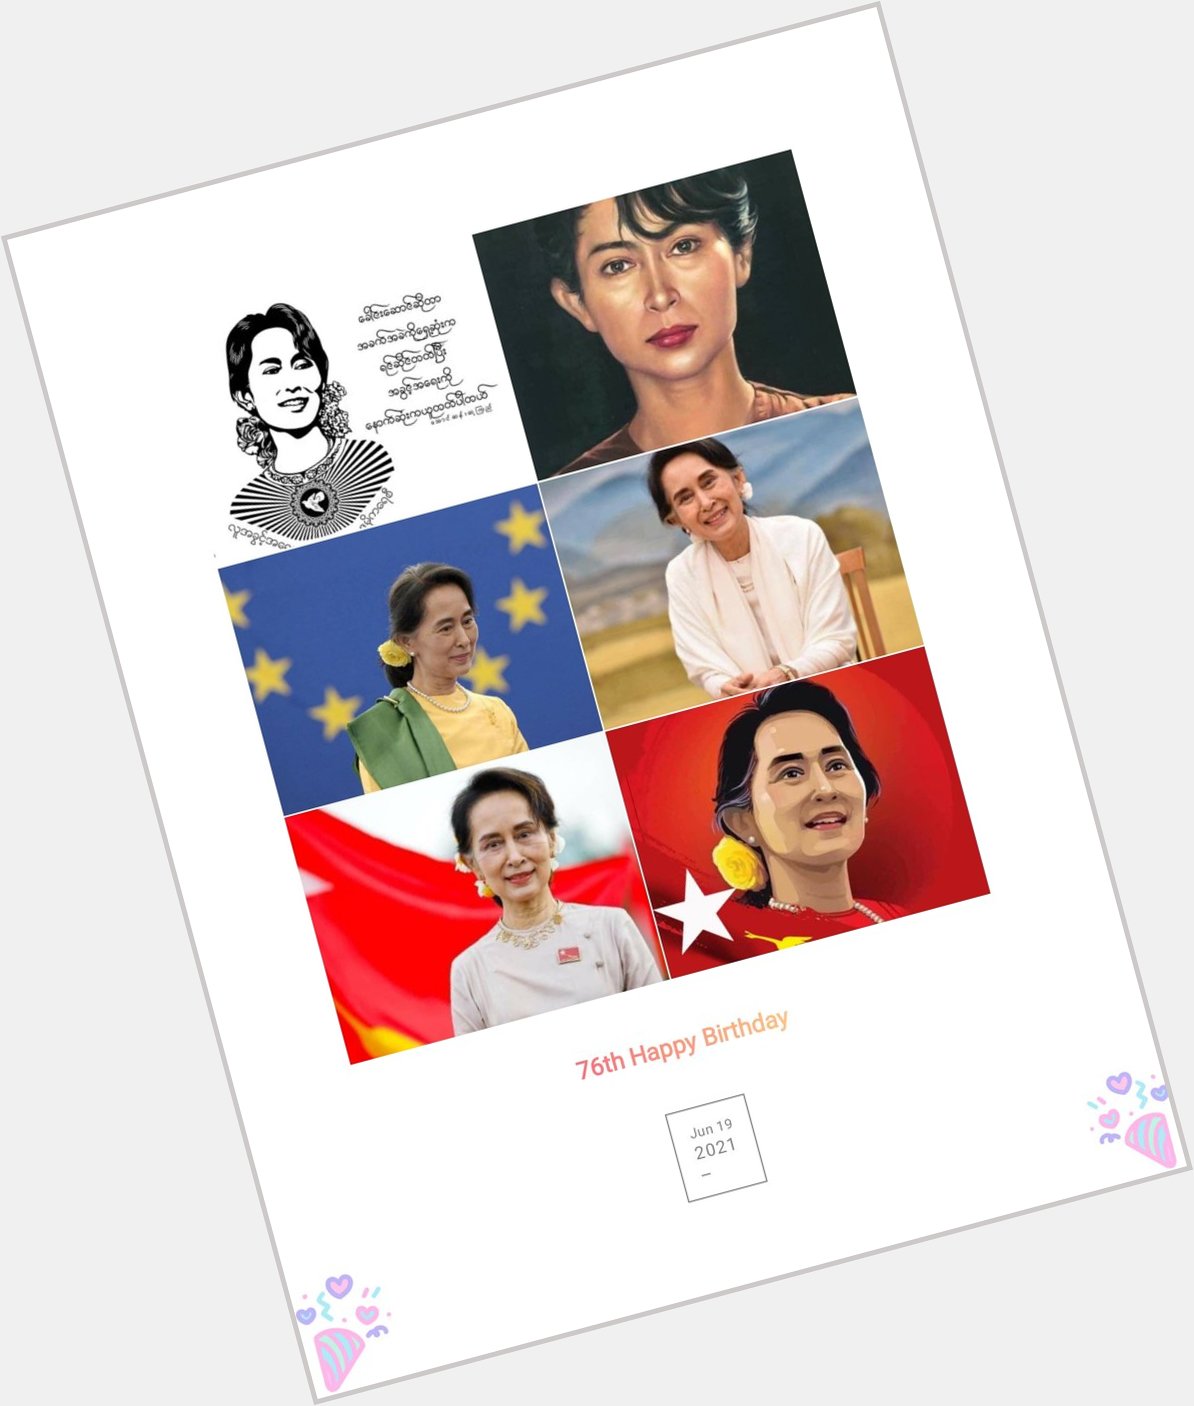 76th Happy Birthday Our Leader Daw Aung San Suu Kyi  